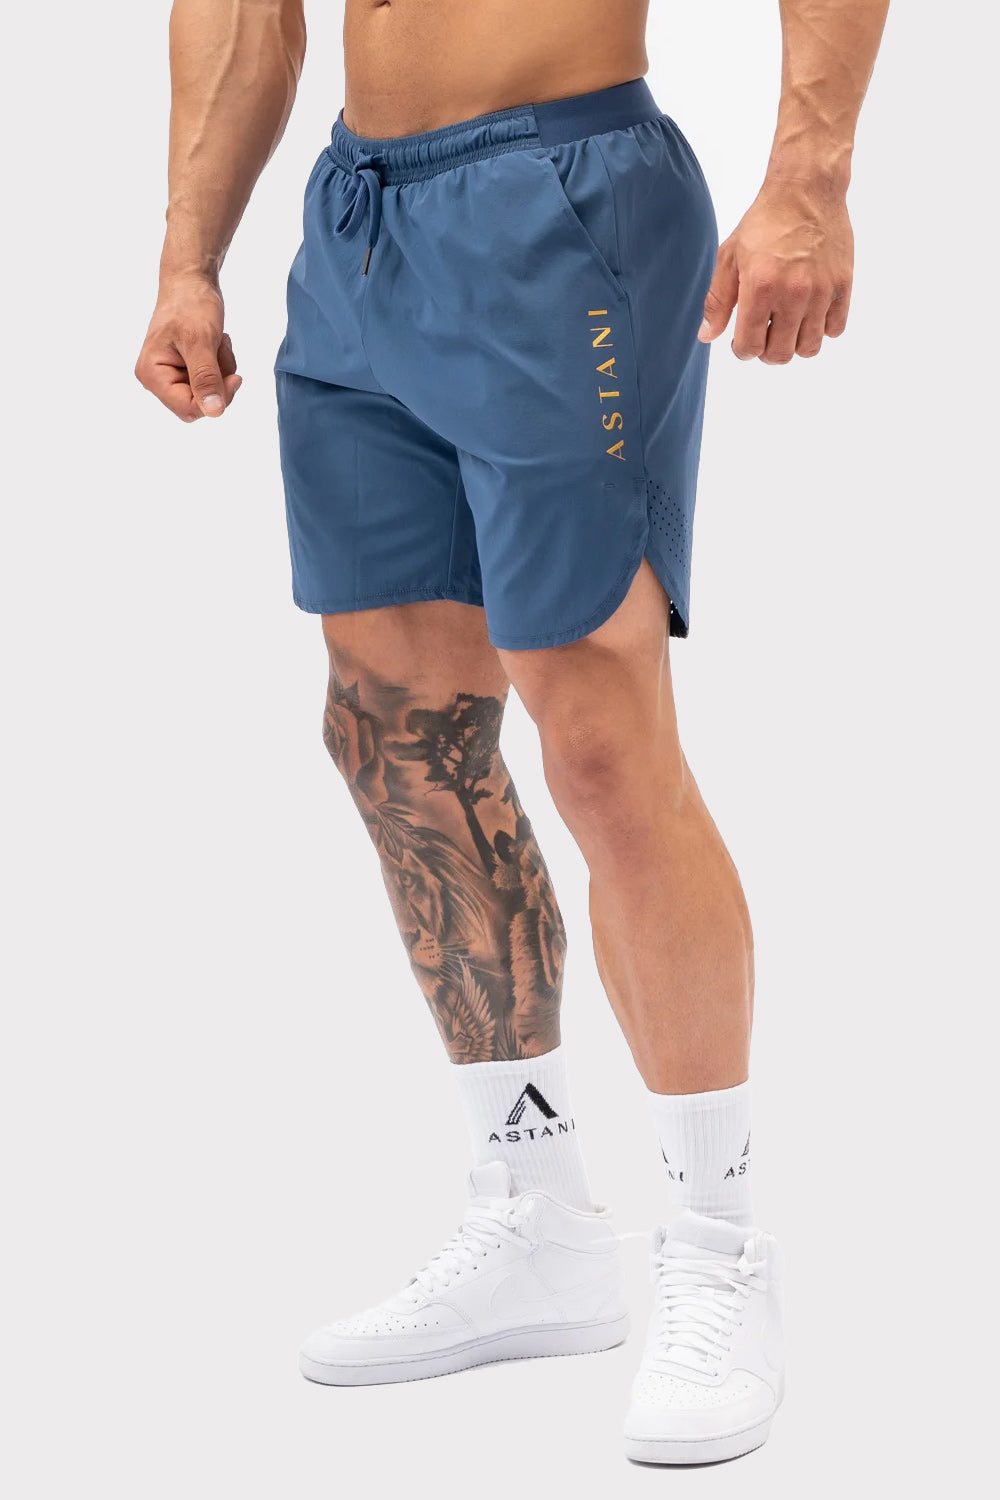 A VELOCE Shorts – Modré